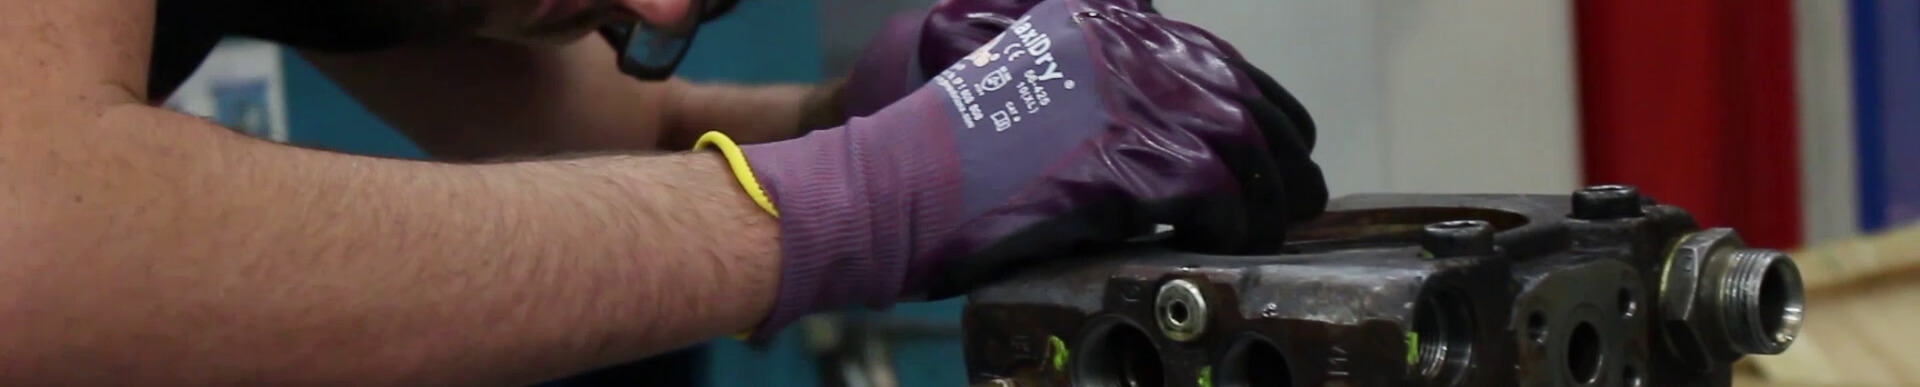 Ein Techniker repariert eine Kolbenpumpe